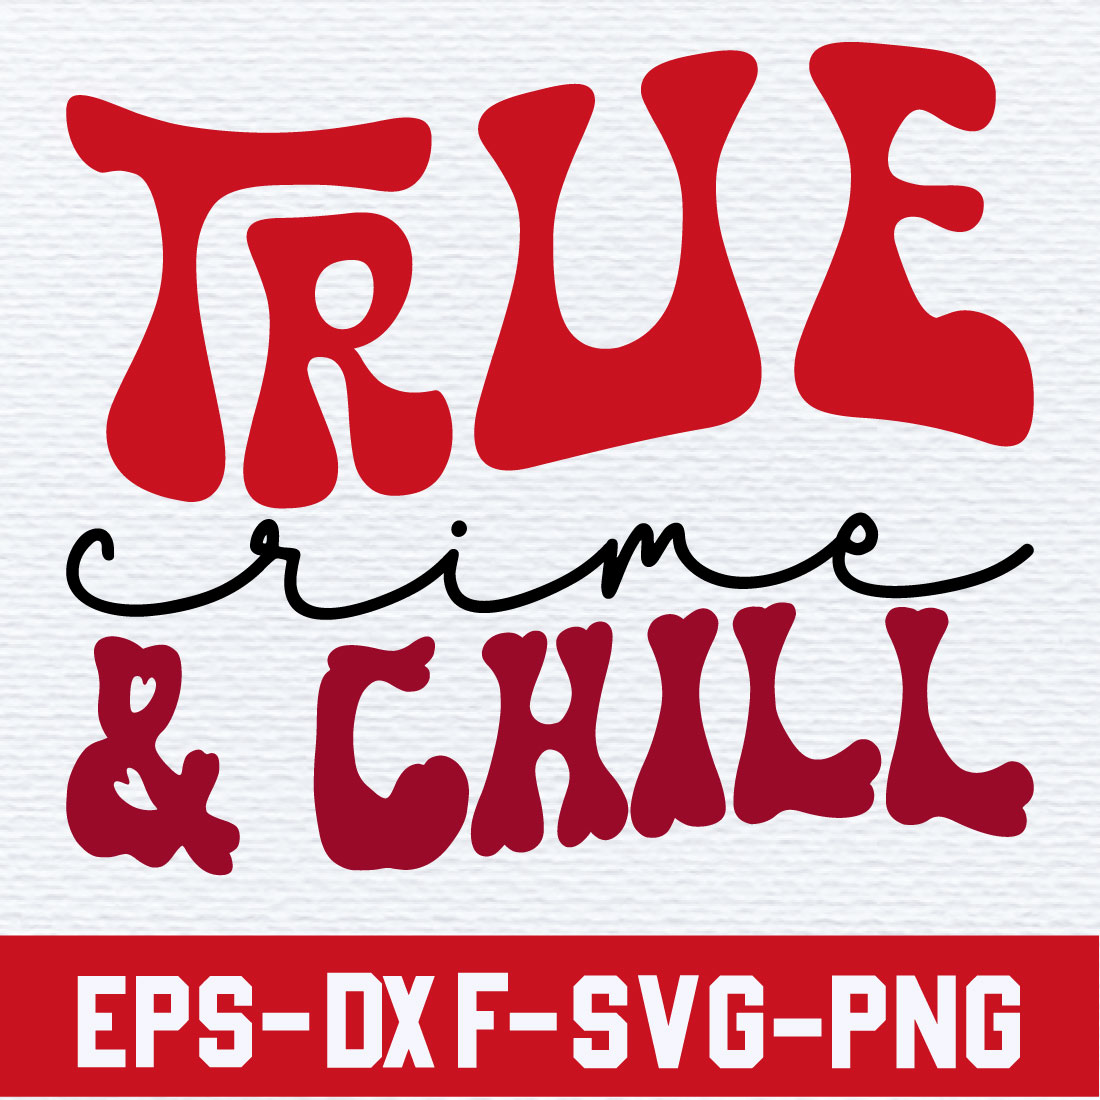 True Crime & Chill preview image.